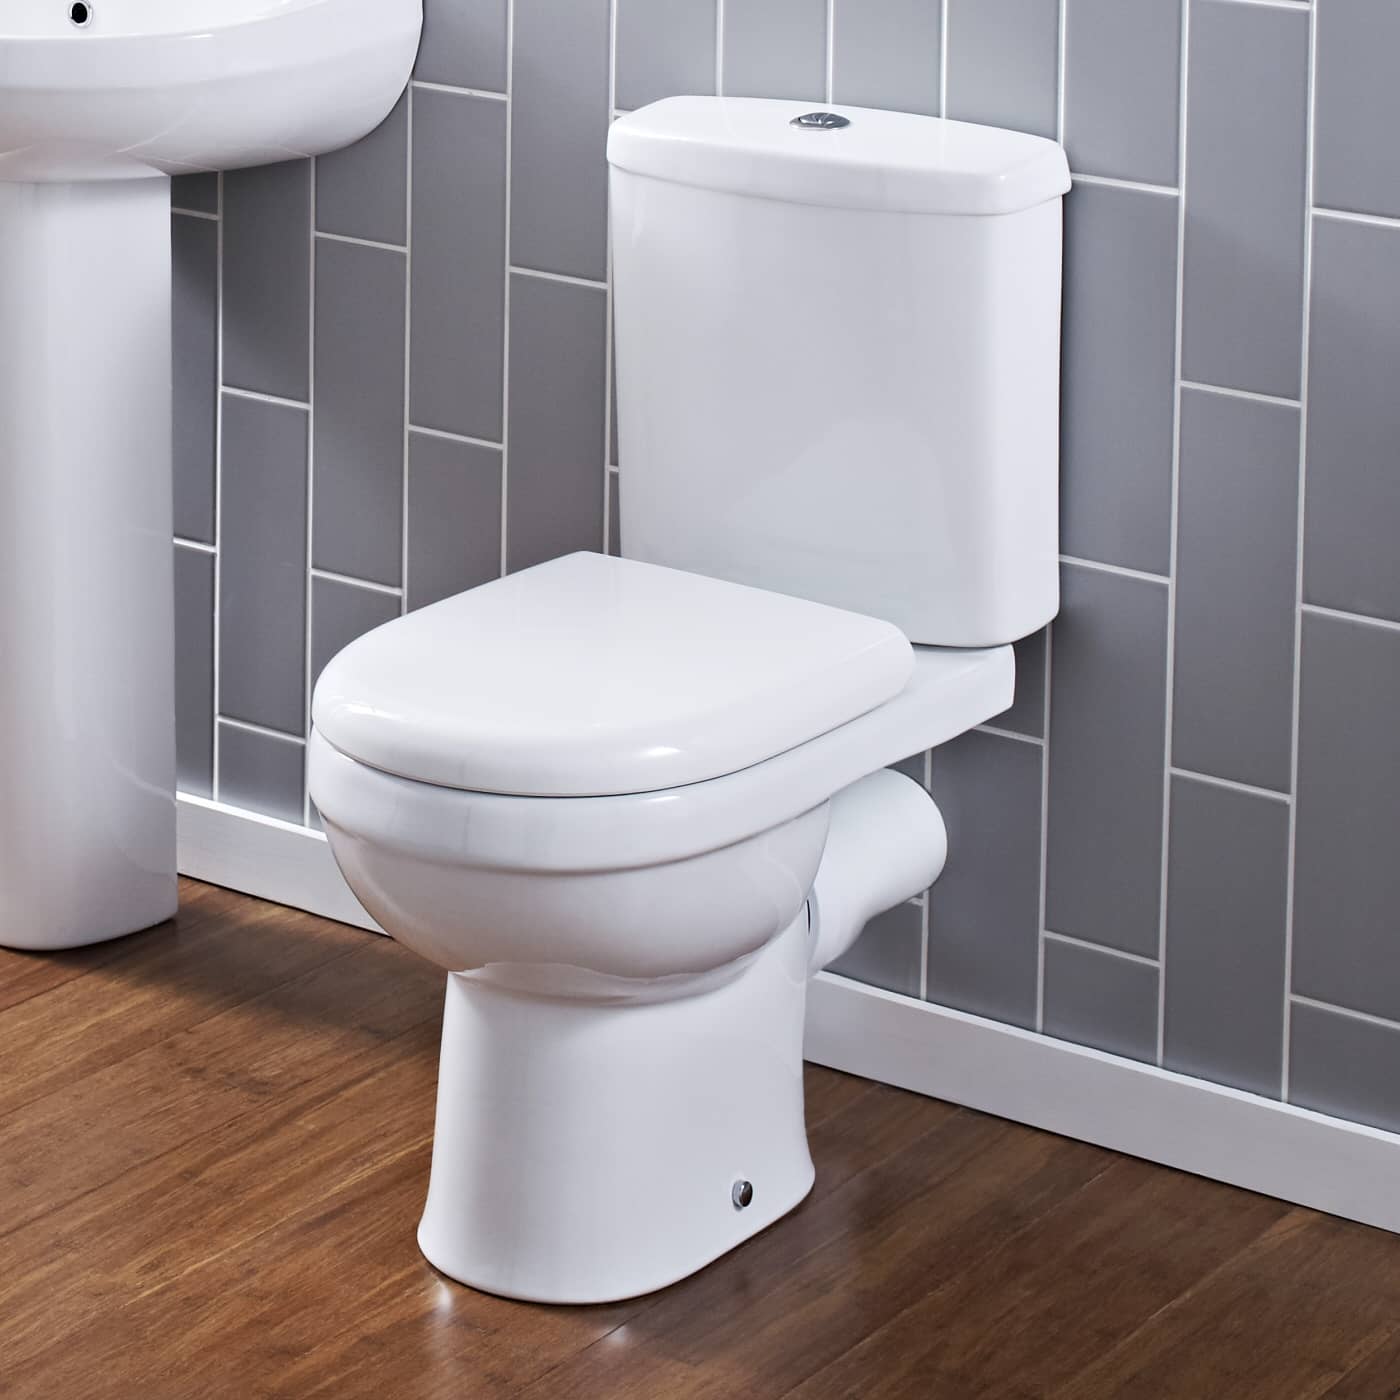 Blanc salle de bains wc eau de toilette raccord de tuyau de sortie